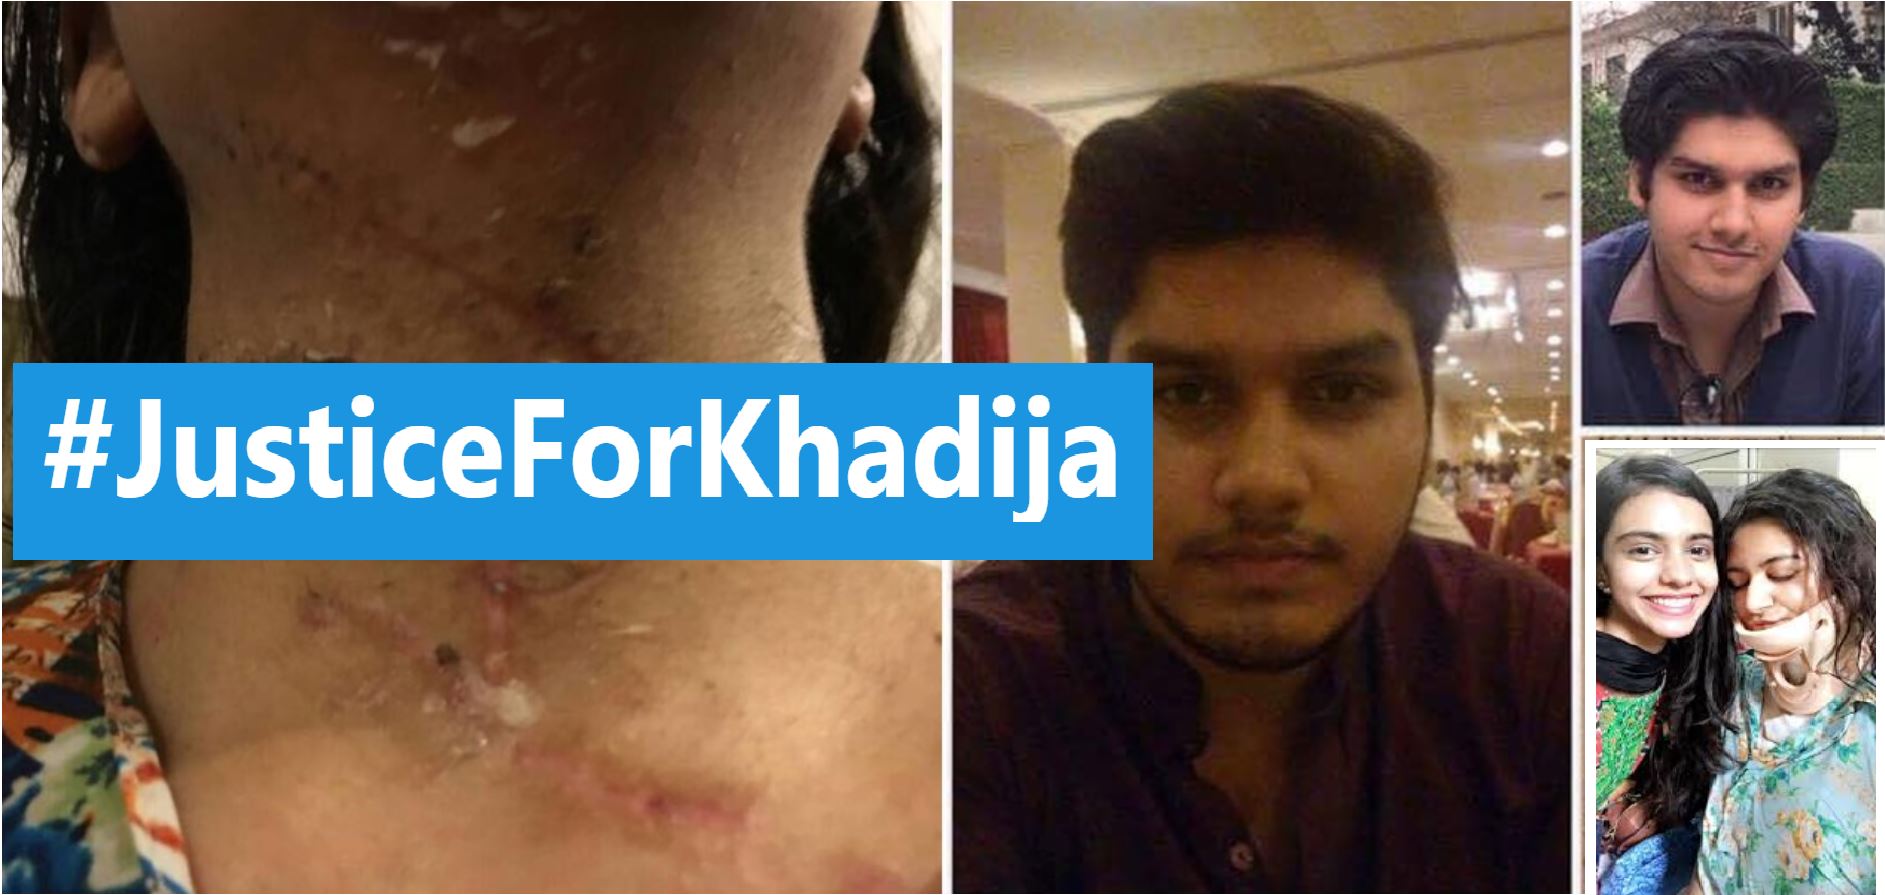 #JusticeforKhadija